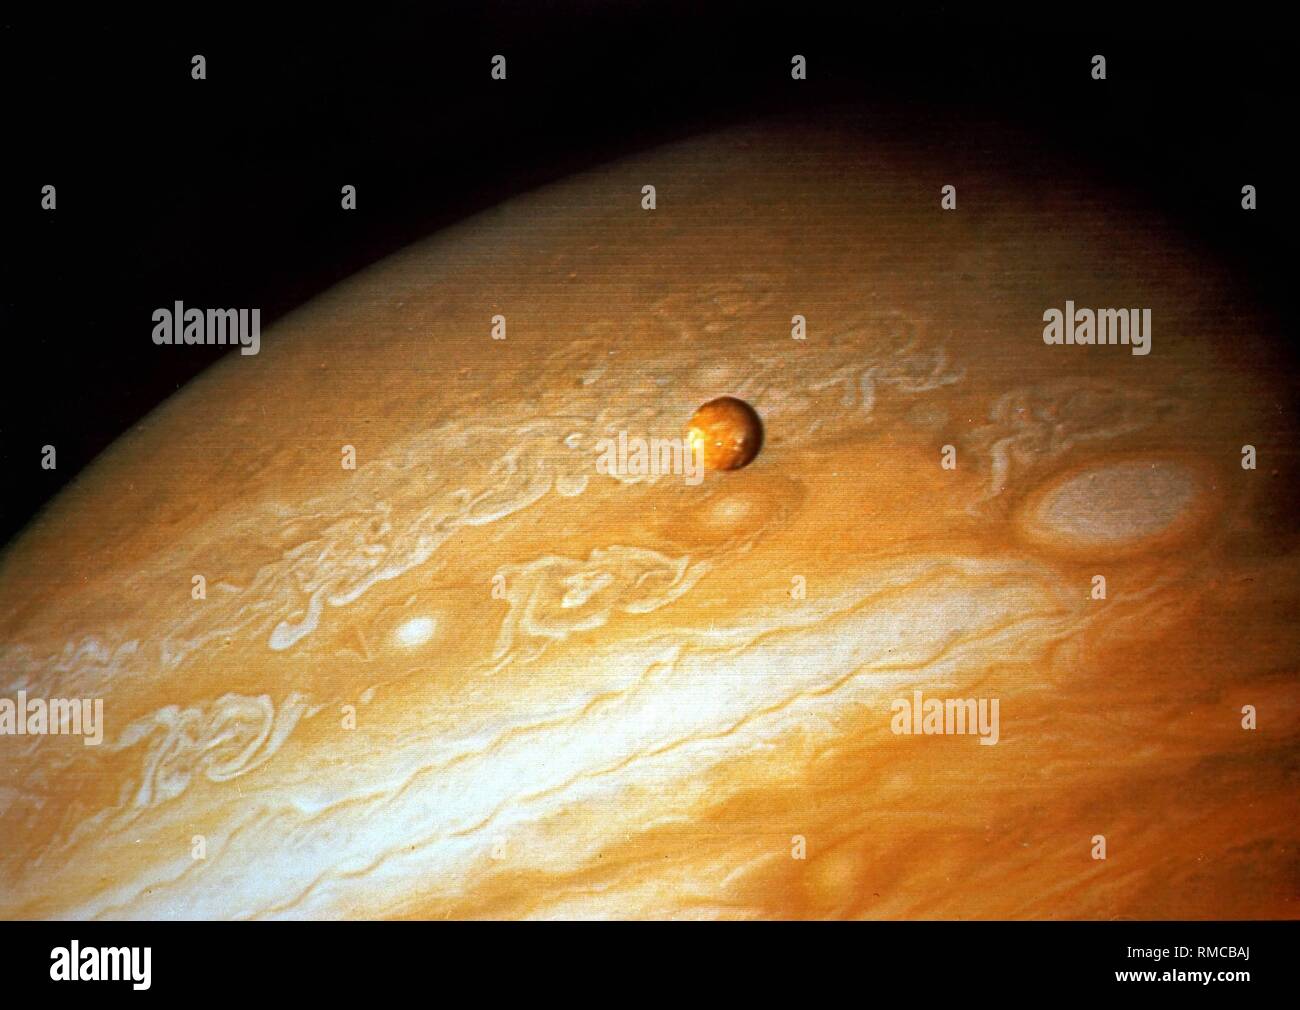 El hemisferio sur de Júpiter, el planeta más grande de nuestro sistema solar.  En el centro de la foto, que fue tomada por la sonda espacial  estadounidense Voyager 2, una de las